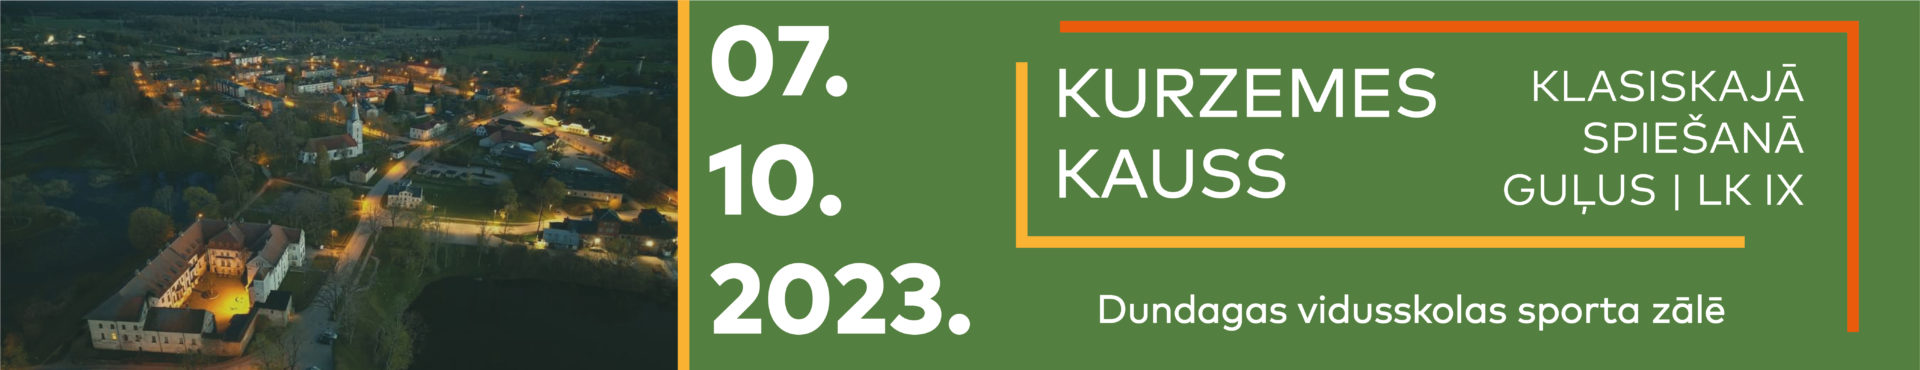 2023_LK9_Dundaga